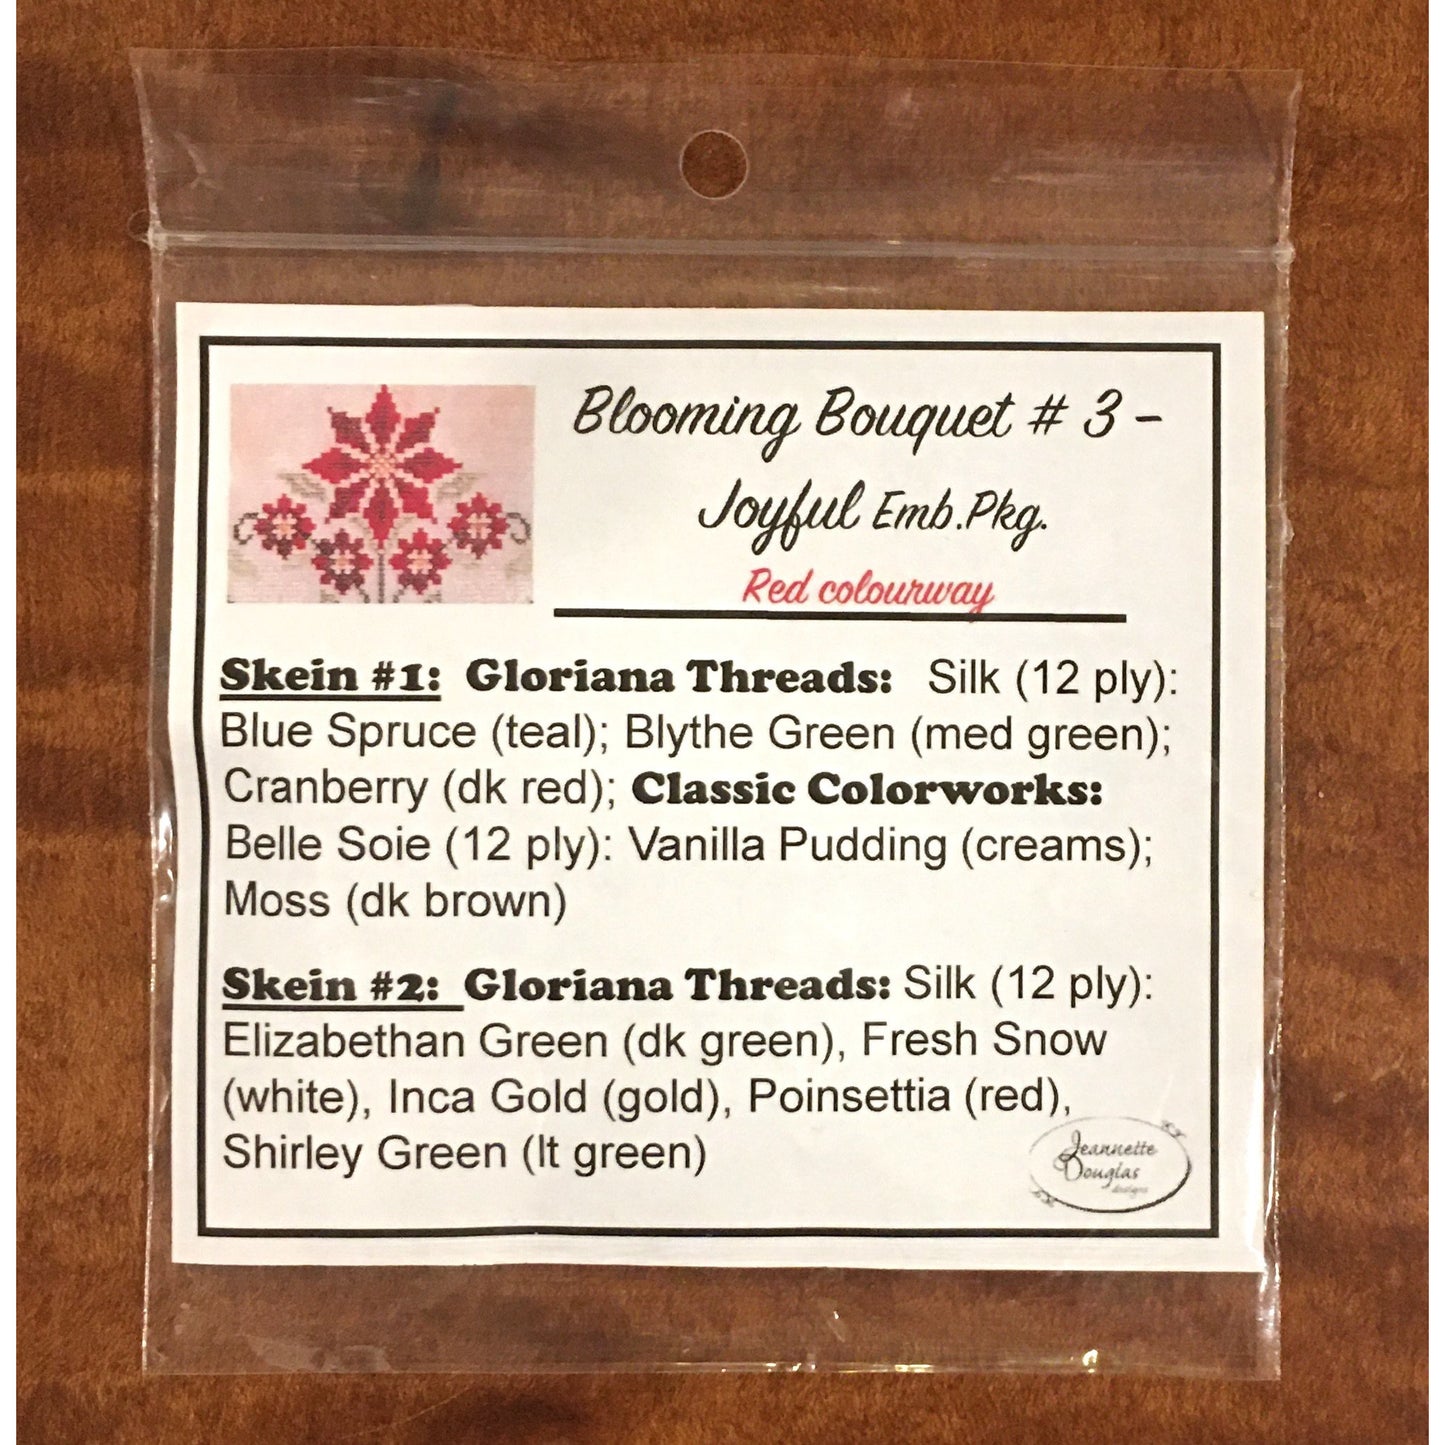 Jeannette Douglas Designs | Blooming Bouquets - #3 - Joyful Thread Package